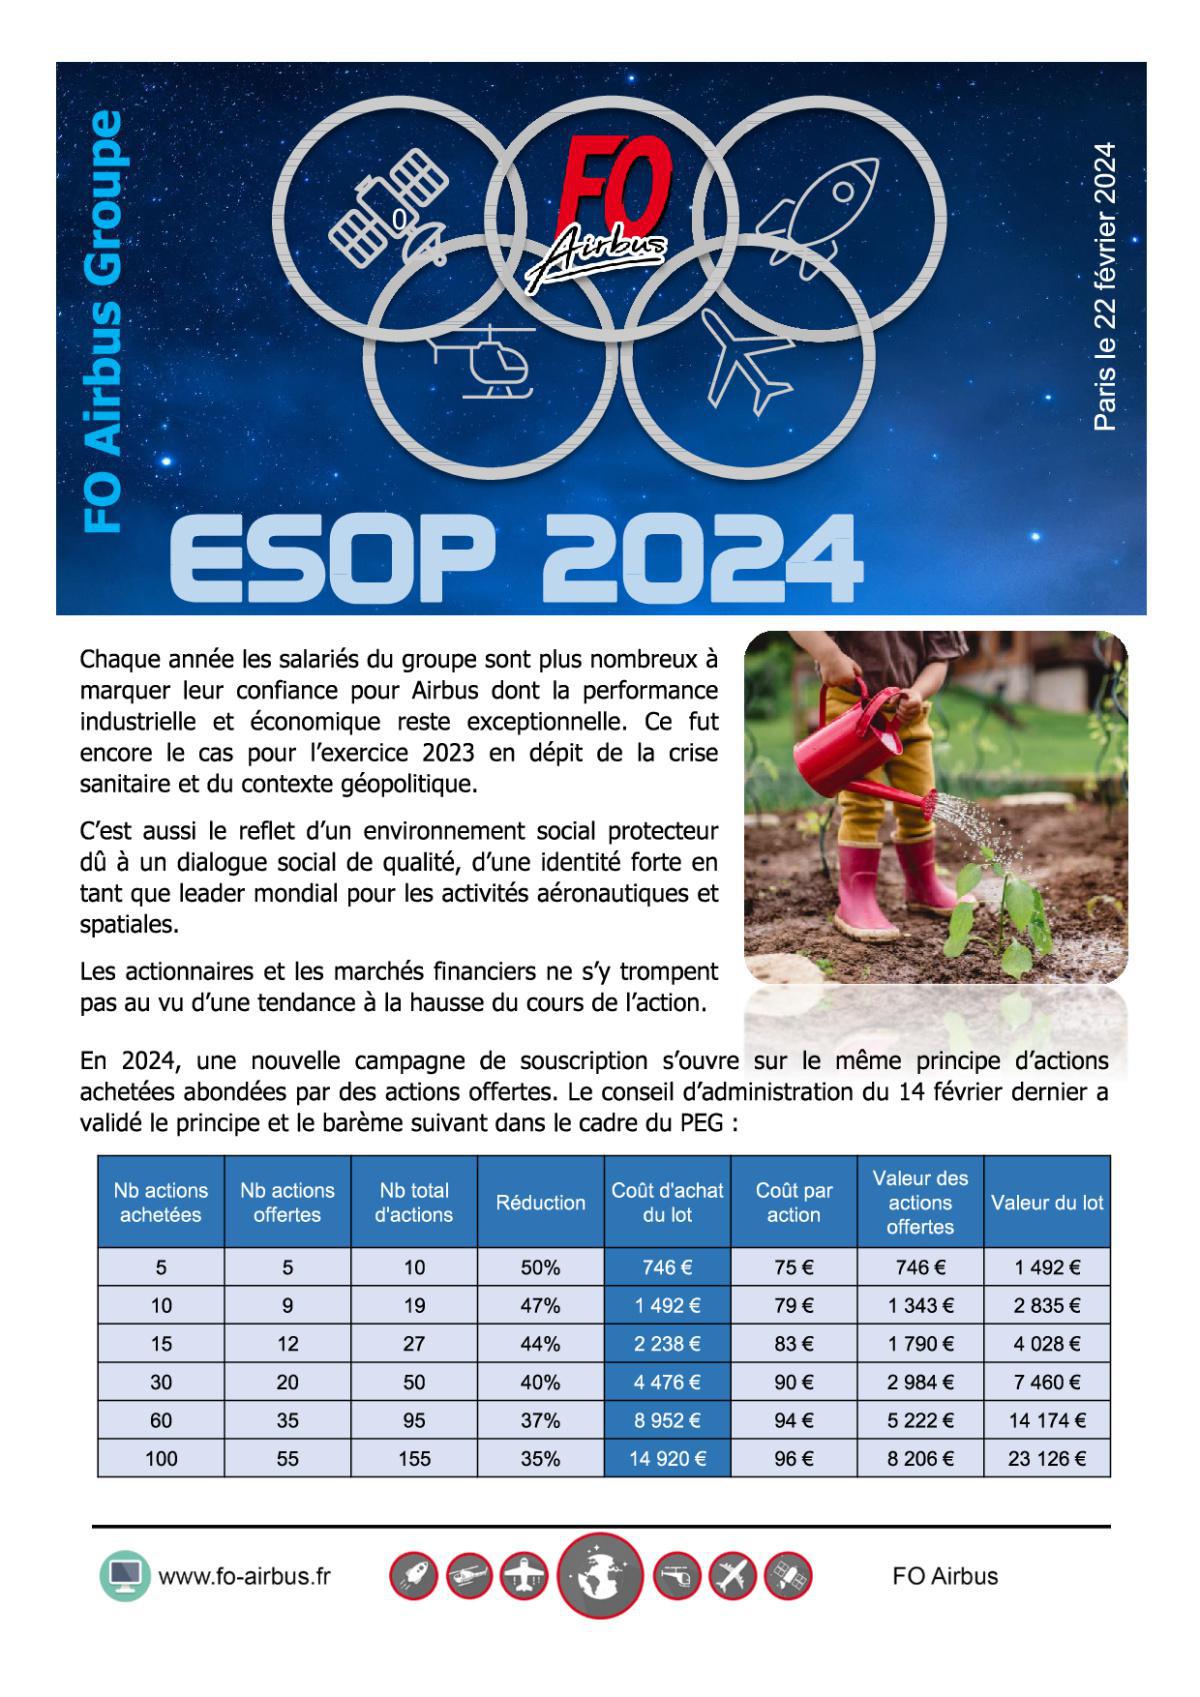 ESOP 2024 (Plan d'actionnariat de salarié)